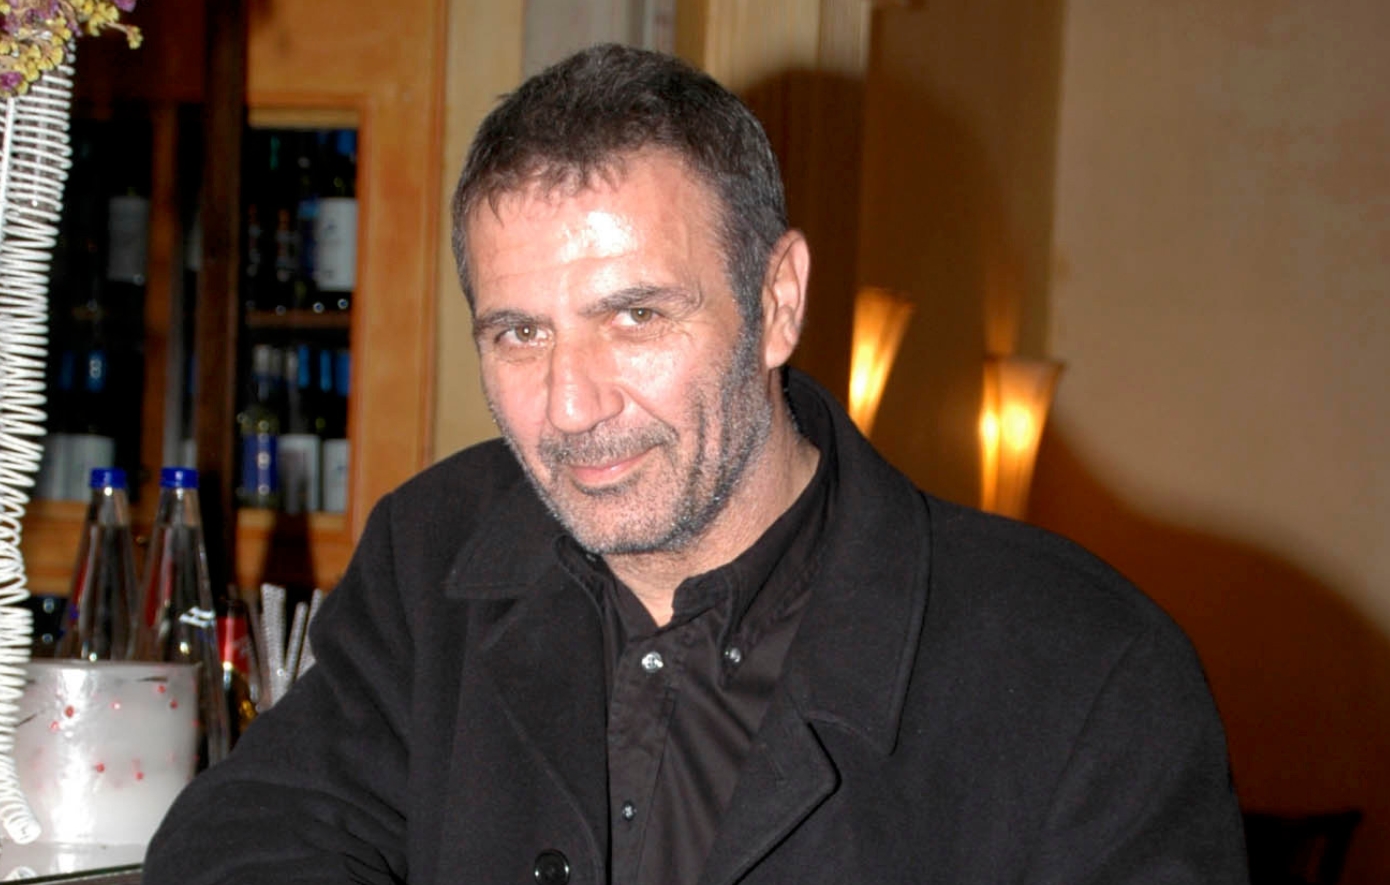 Σαν σήμερα 4 Ιουνίου: Ο Νίκος Σεργιανόπουλος βρίσκεται άγρια δολοφονημένος στο διαμέρισμά του